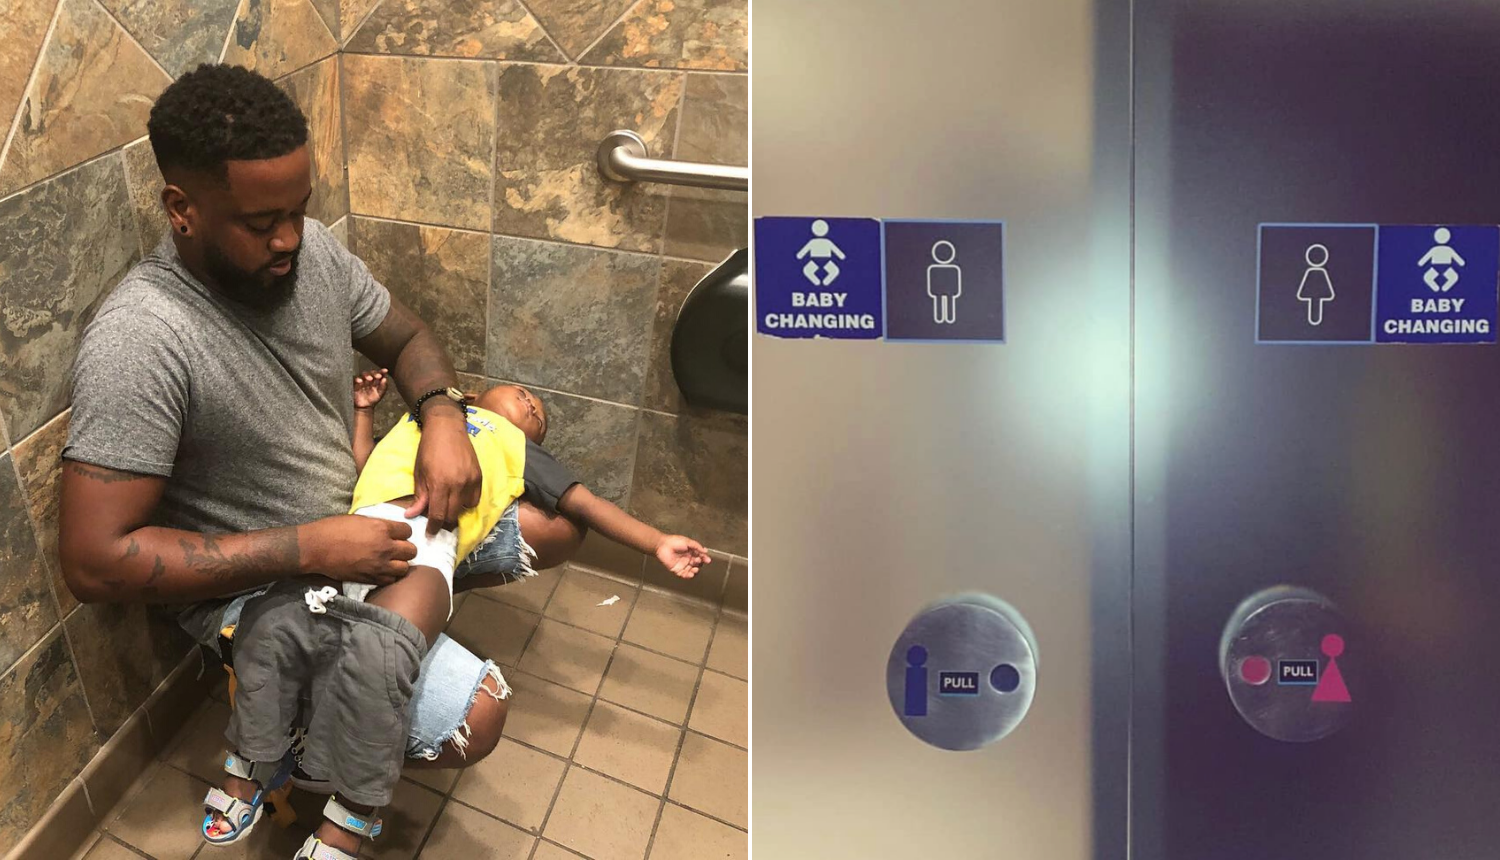 Očevi su pobijedili: Prematalice za bebe stavili i u muške WC-e